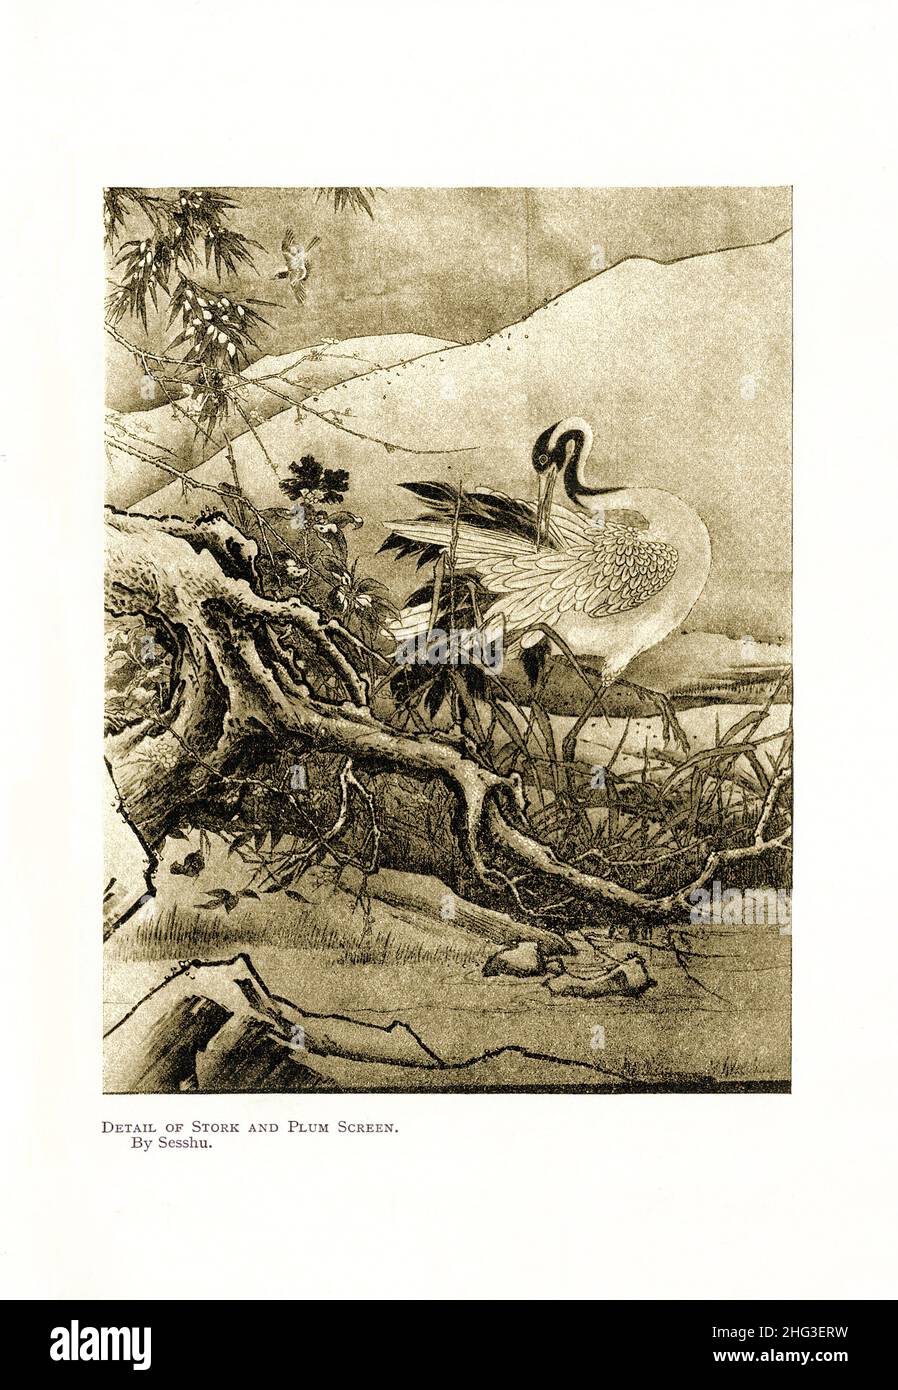 Peinture médiévale japonaise : détail de l'écran Stork et Plum.Par Sesshu.Reproduction de l'illustration de livre de 1912 Sesshū Tōyō (connu sous le nom d'Oda Tōyō, Unko Banque D'Images